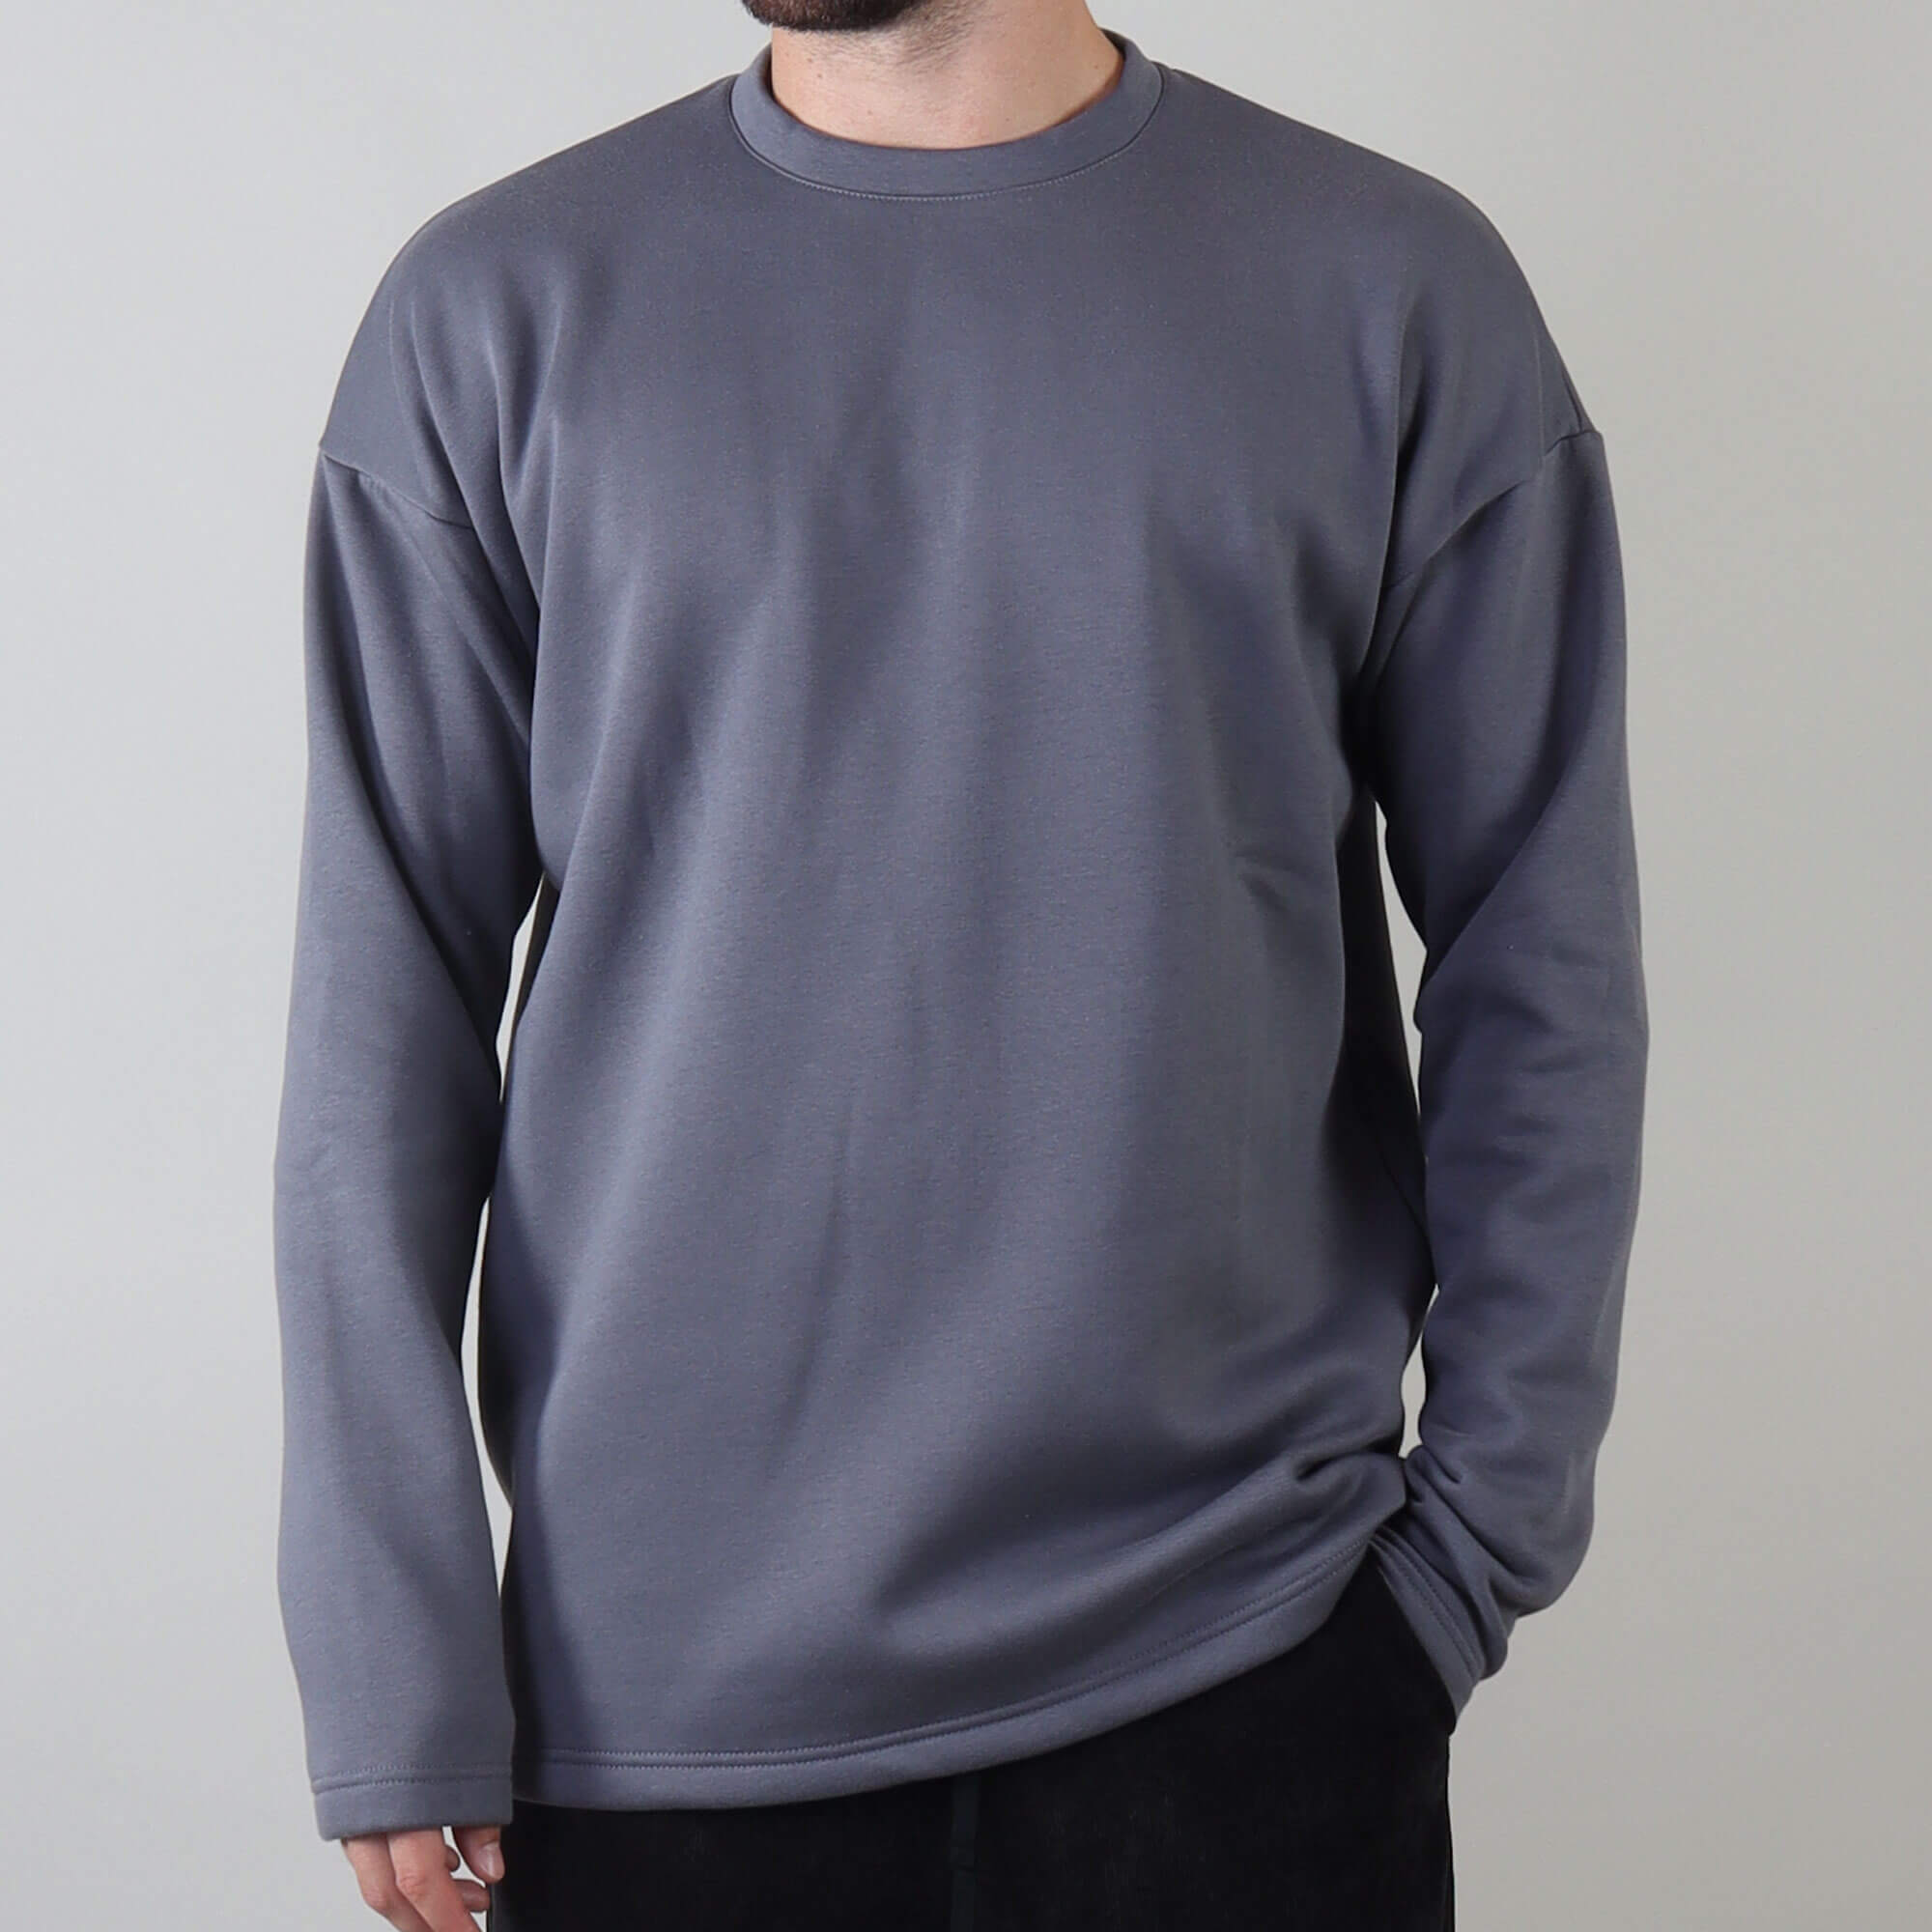 PRJCT sweater grey